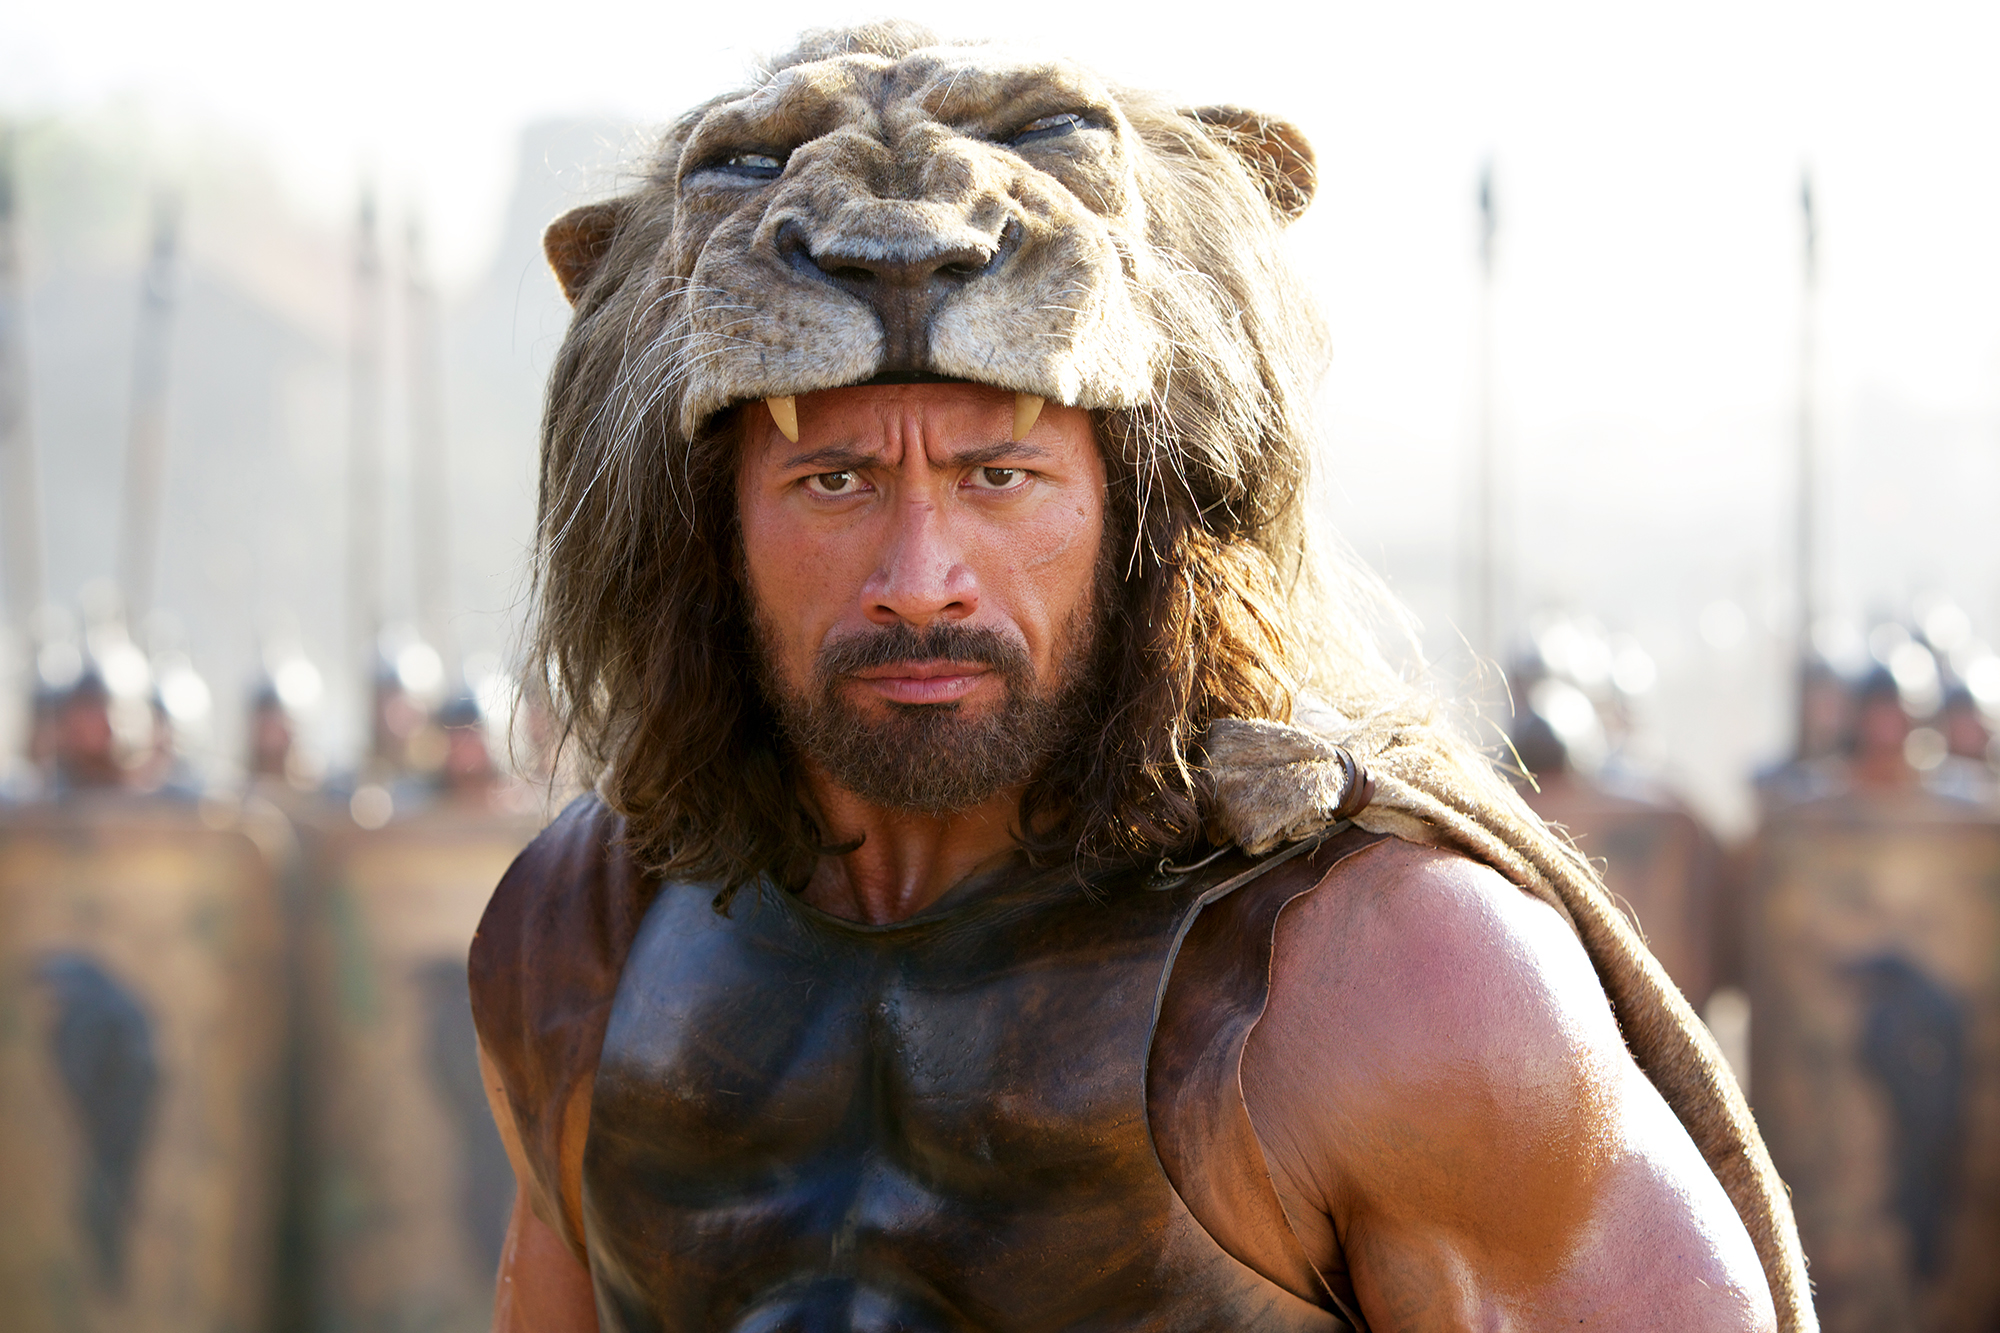 Johnson as Hercules in Hercules, 2014.